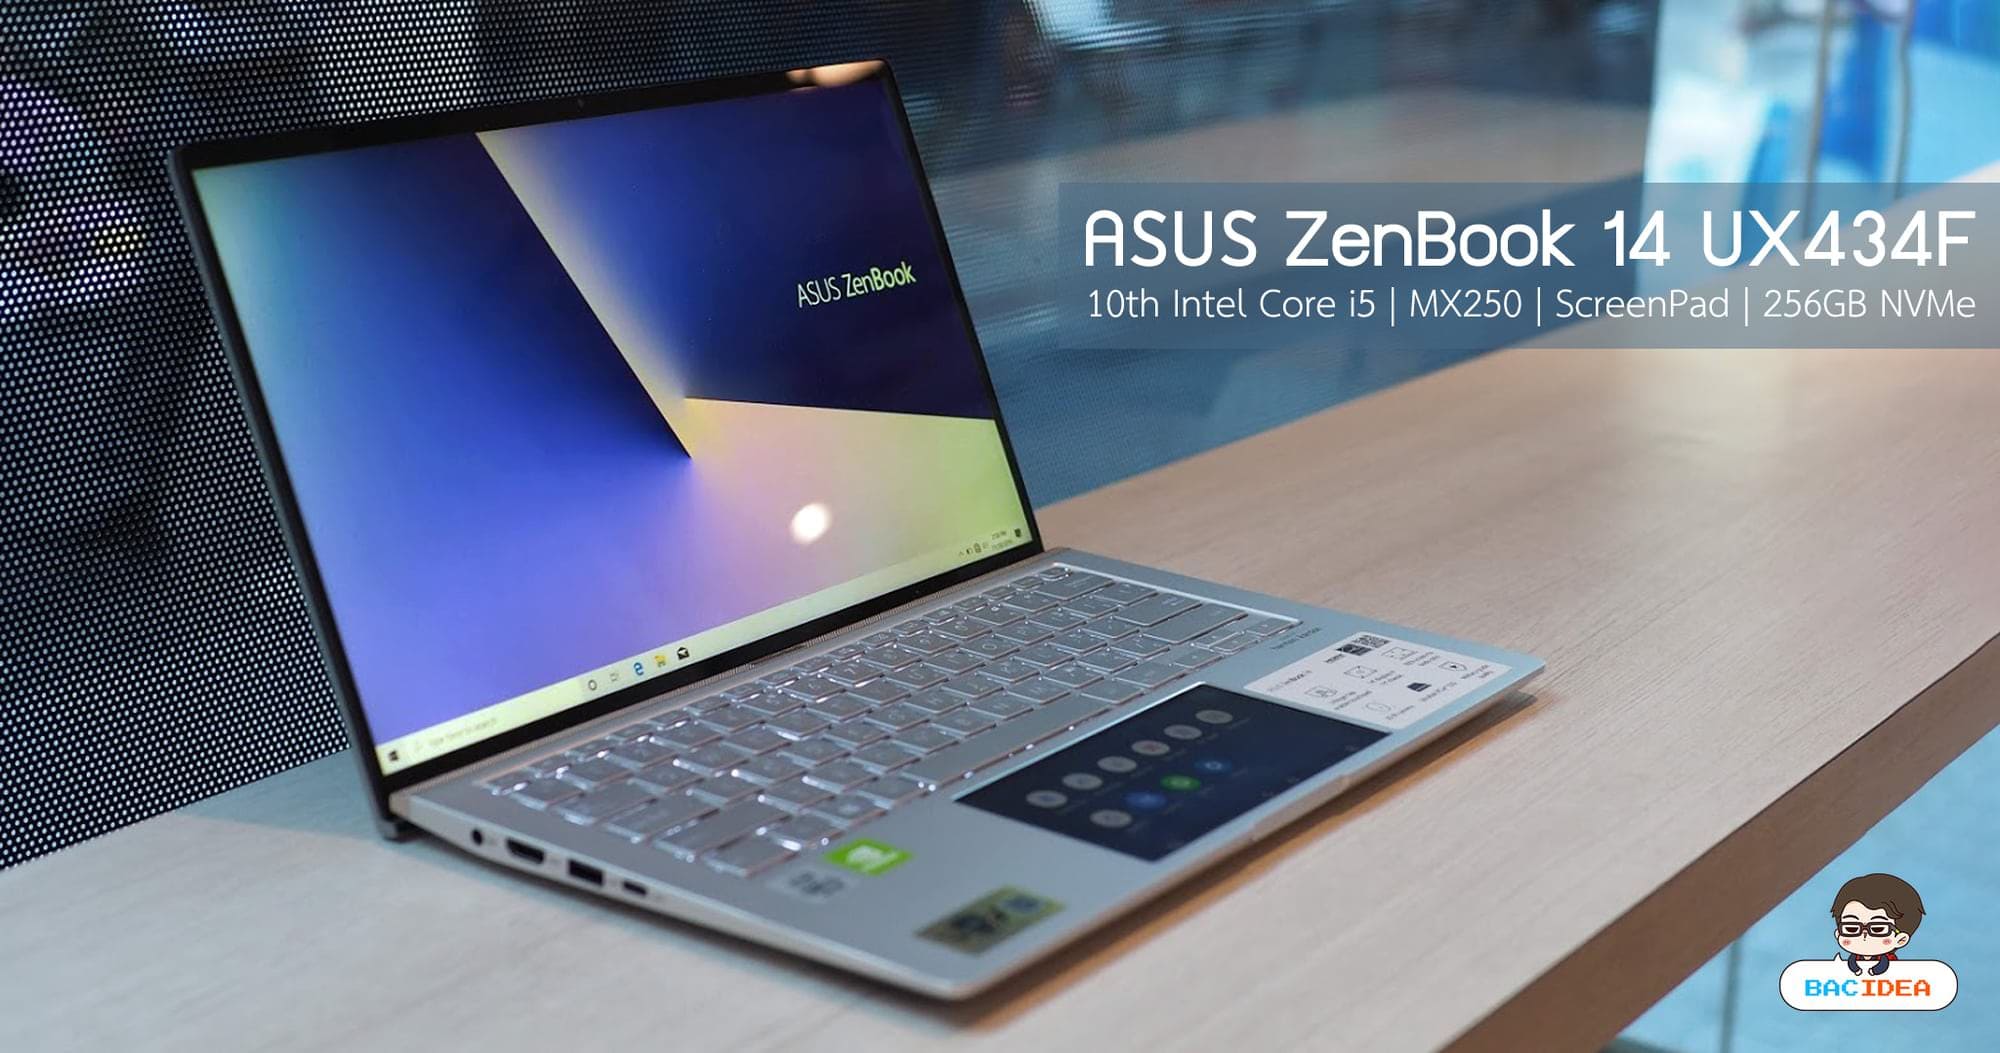 รีวิว ASUS ZenBook 14 UX434F ขุมพลัง 10th Core i5 การ์ดจอแยก พร้อม ScreenPad ในราคา 26,990 บาท 1